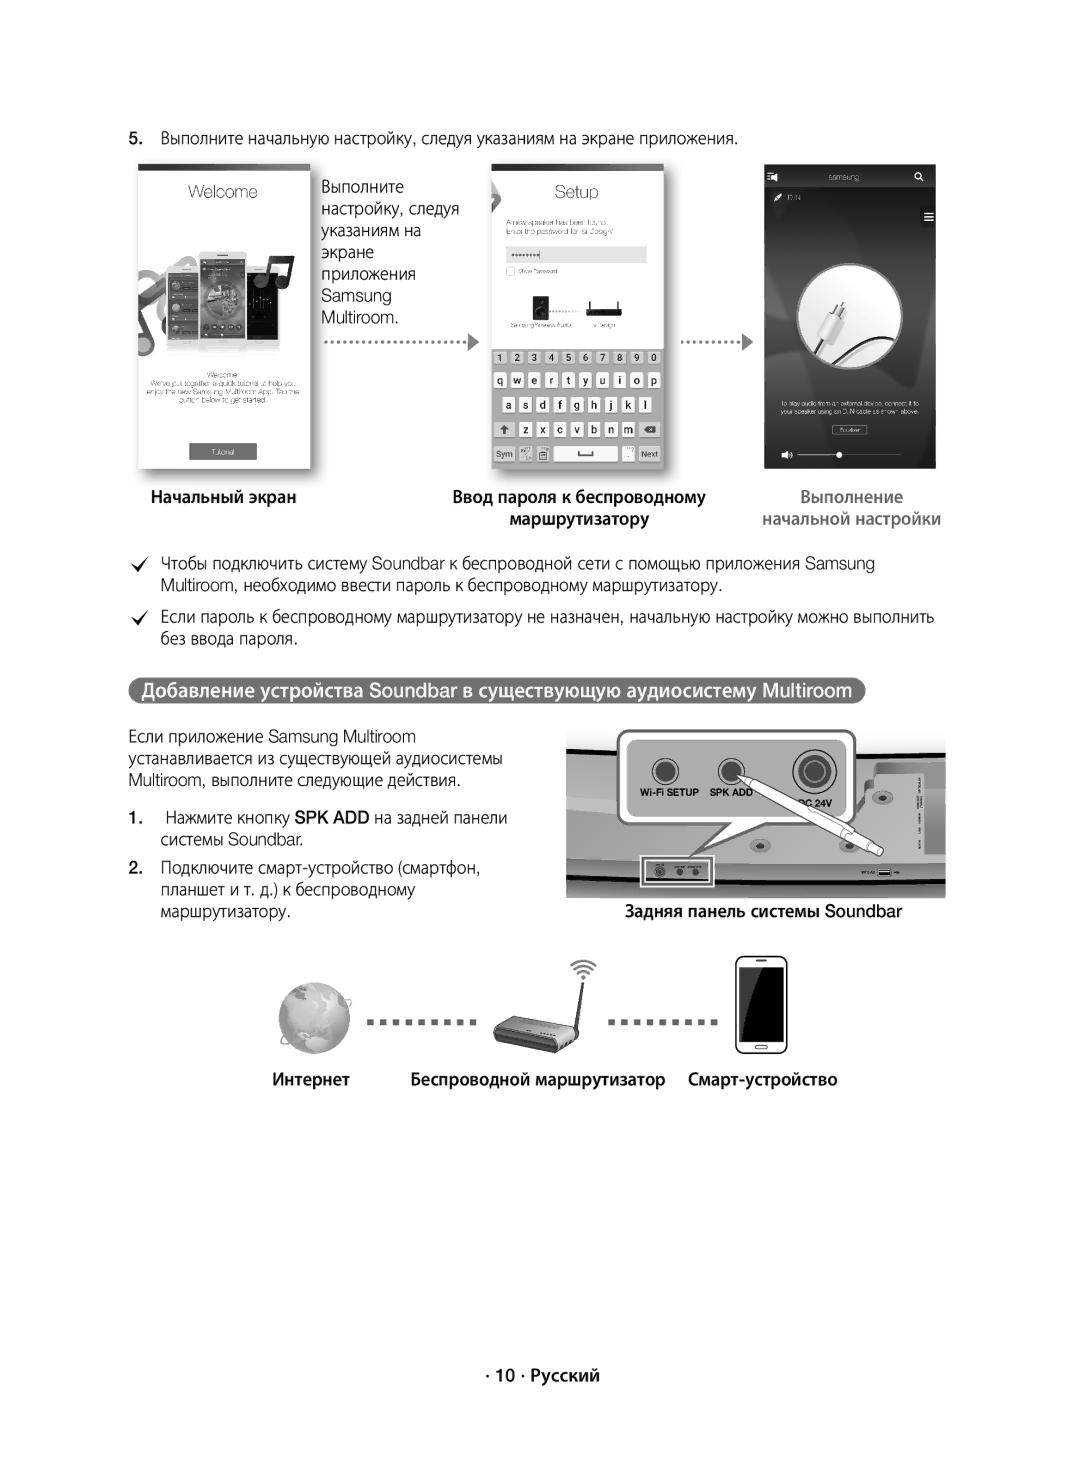 Samsung HW-J7500/RU manual Начальный экран, Задняя панель системы Soundbar Интернет, · 10 · Русский 